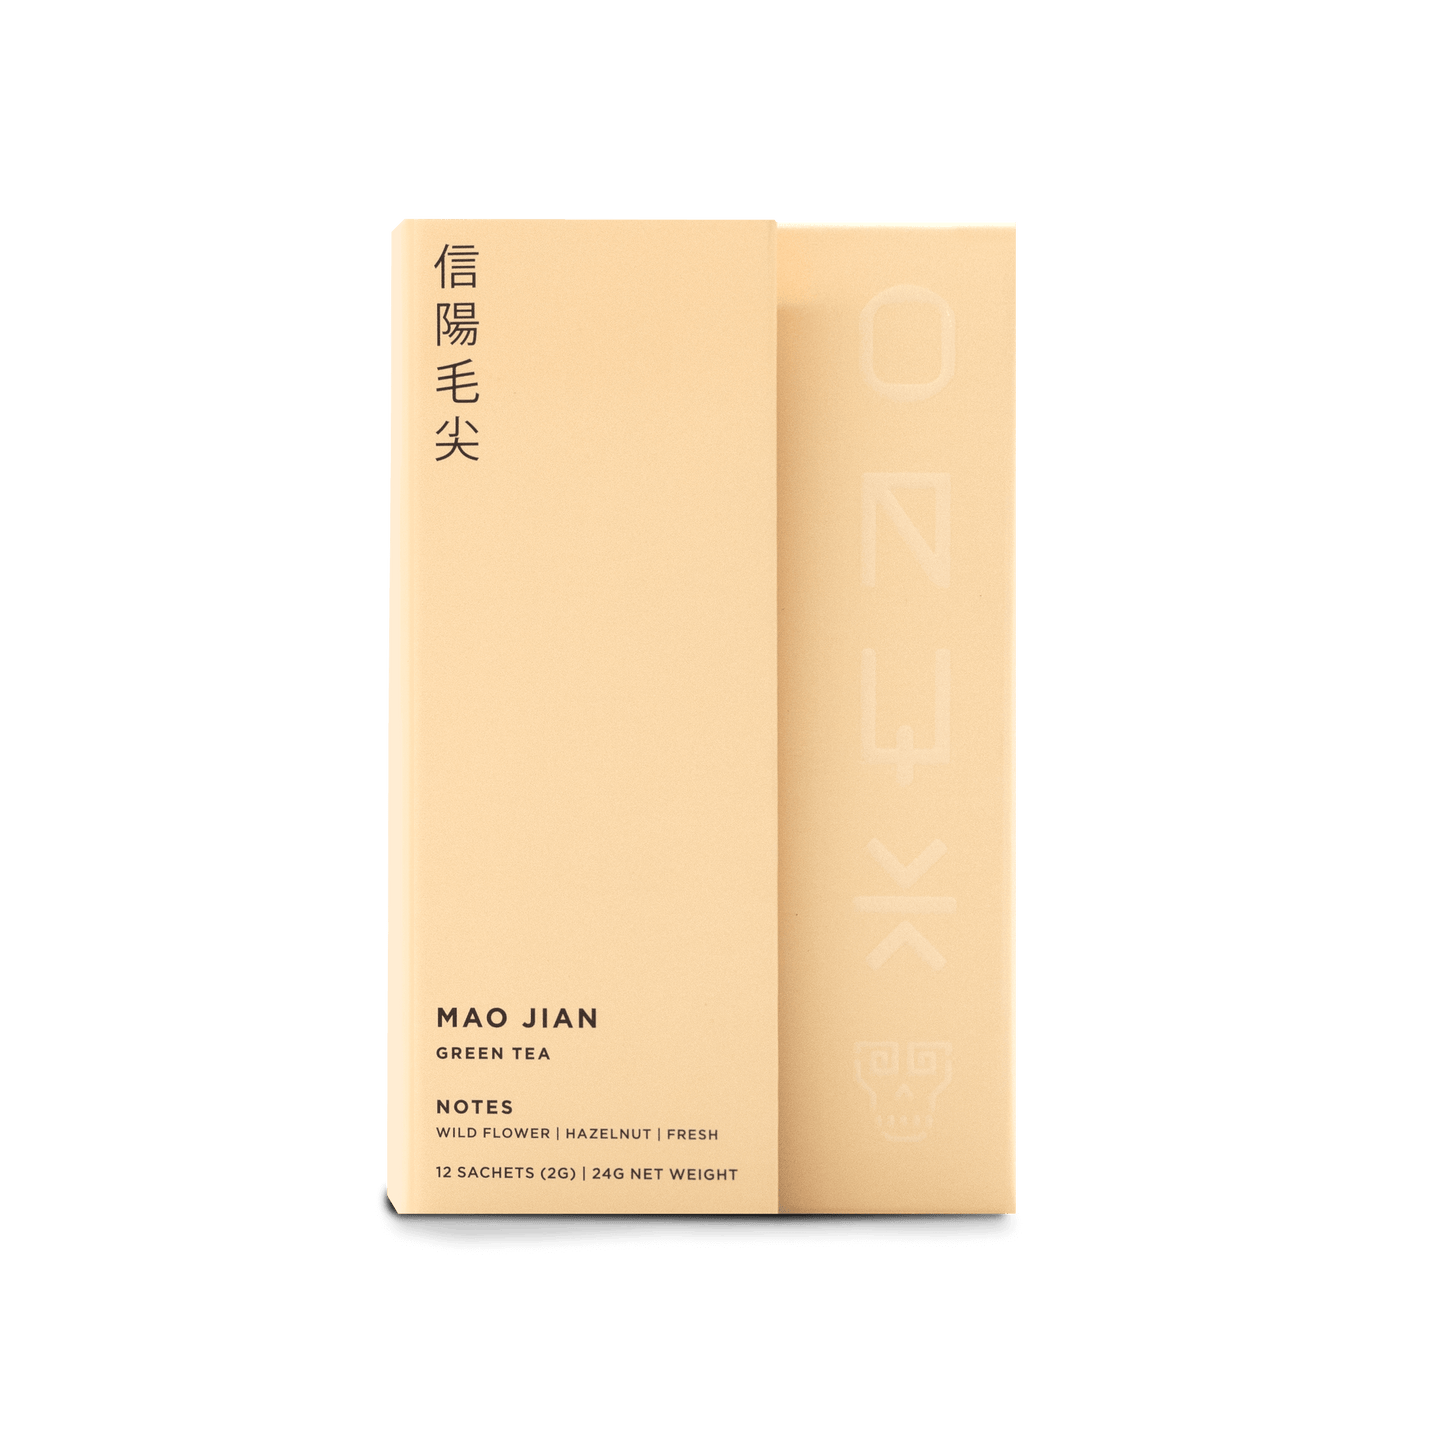 Mao Jian Tea by Onyx Coffee Lab